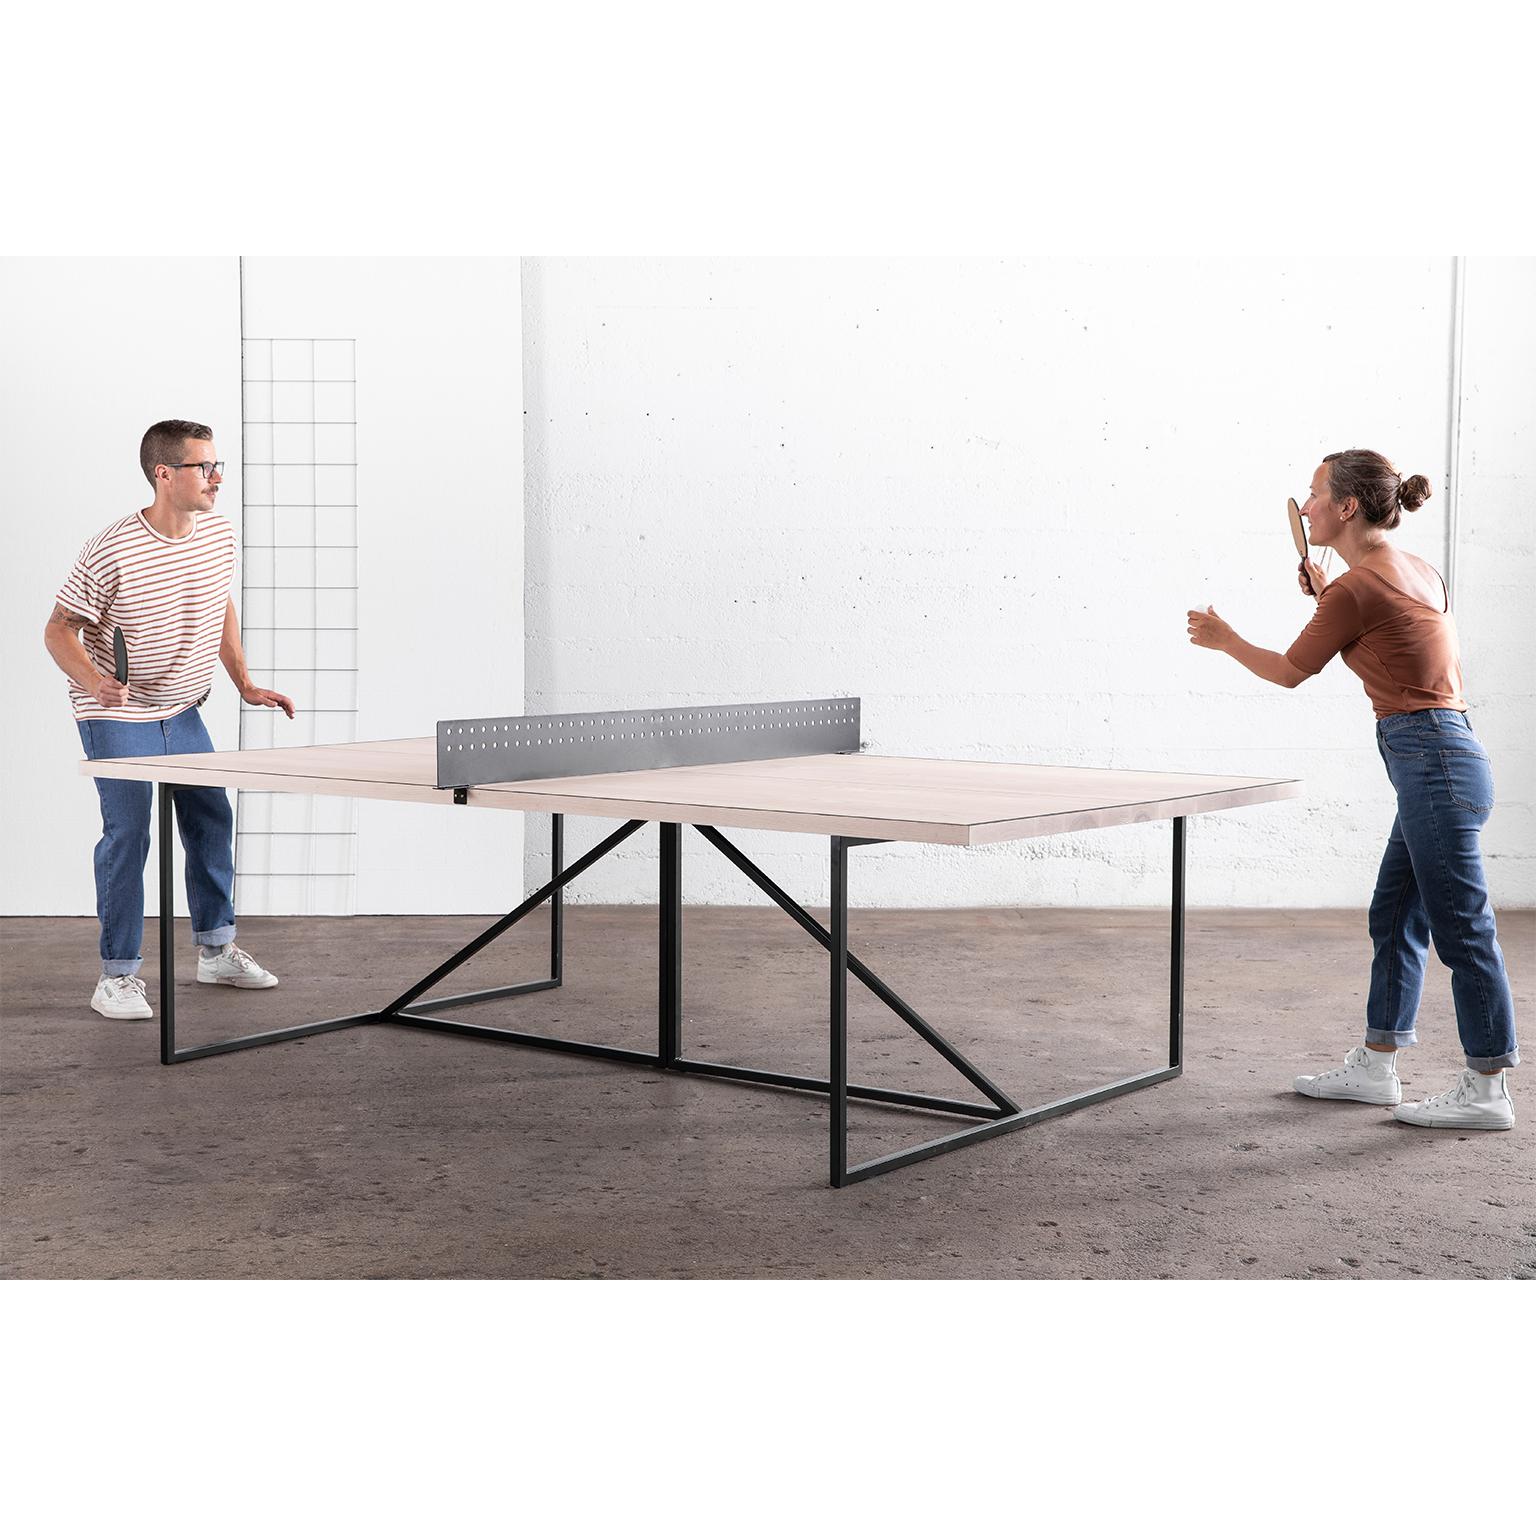 La table de ping-pong Break donne un aspect moderne à ce jeu de société classique. Vous jouerez comme un professionnel sur la surface de jeu en bois mat de la table. Le cadre de la table est soudé à la main à partir d'un acier durable et peut être